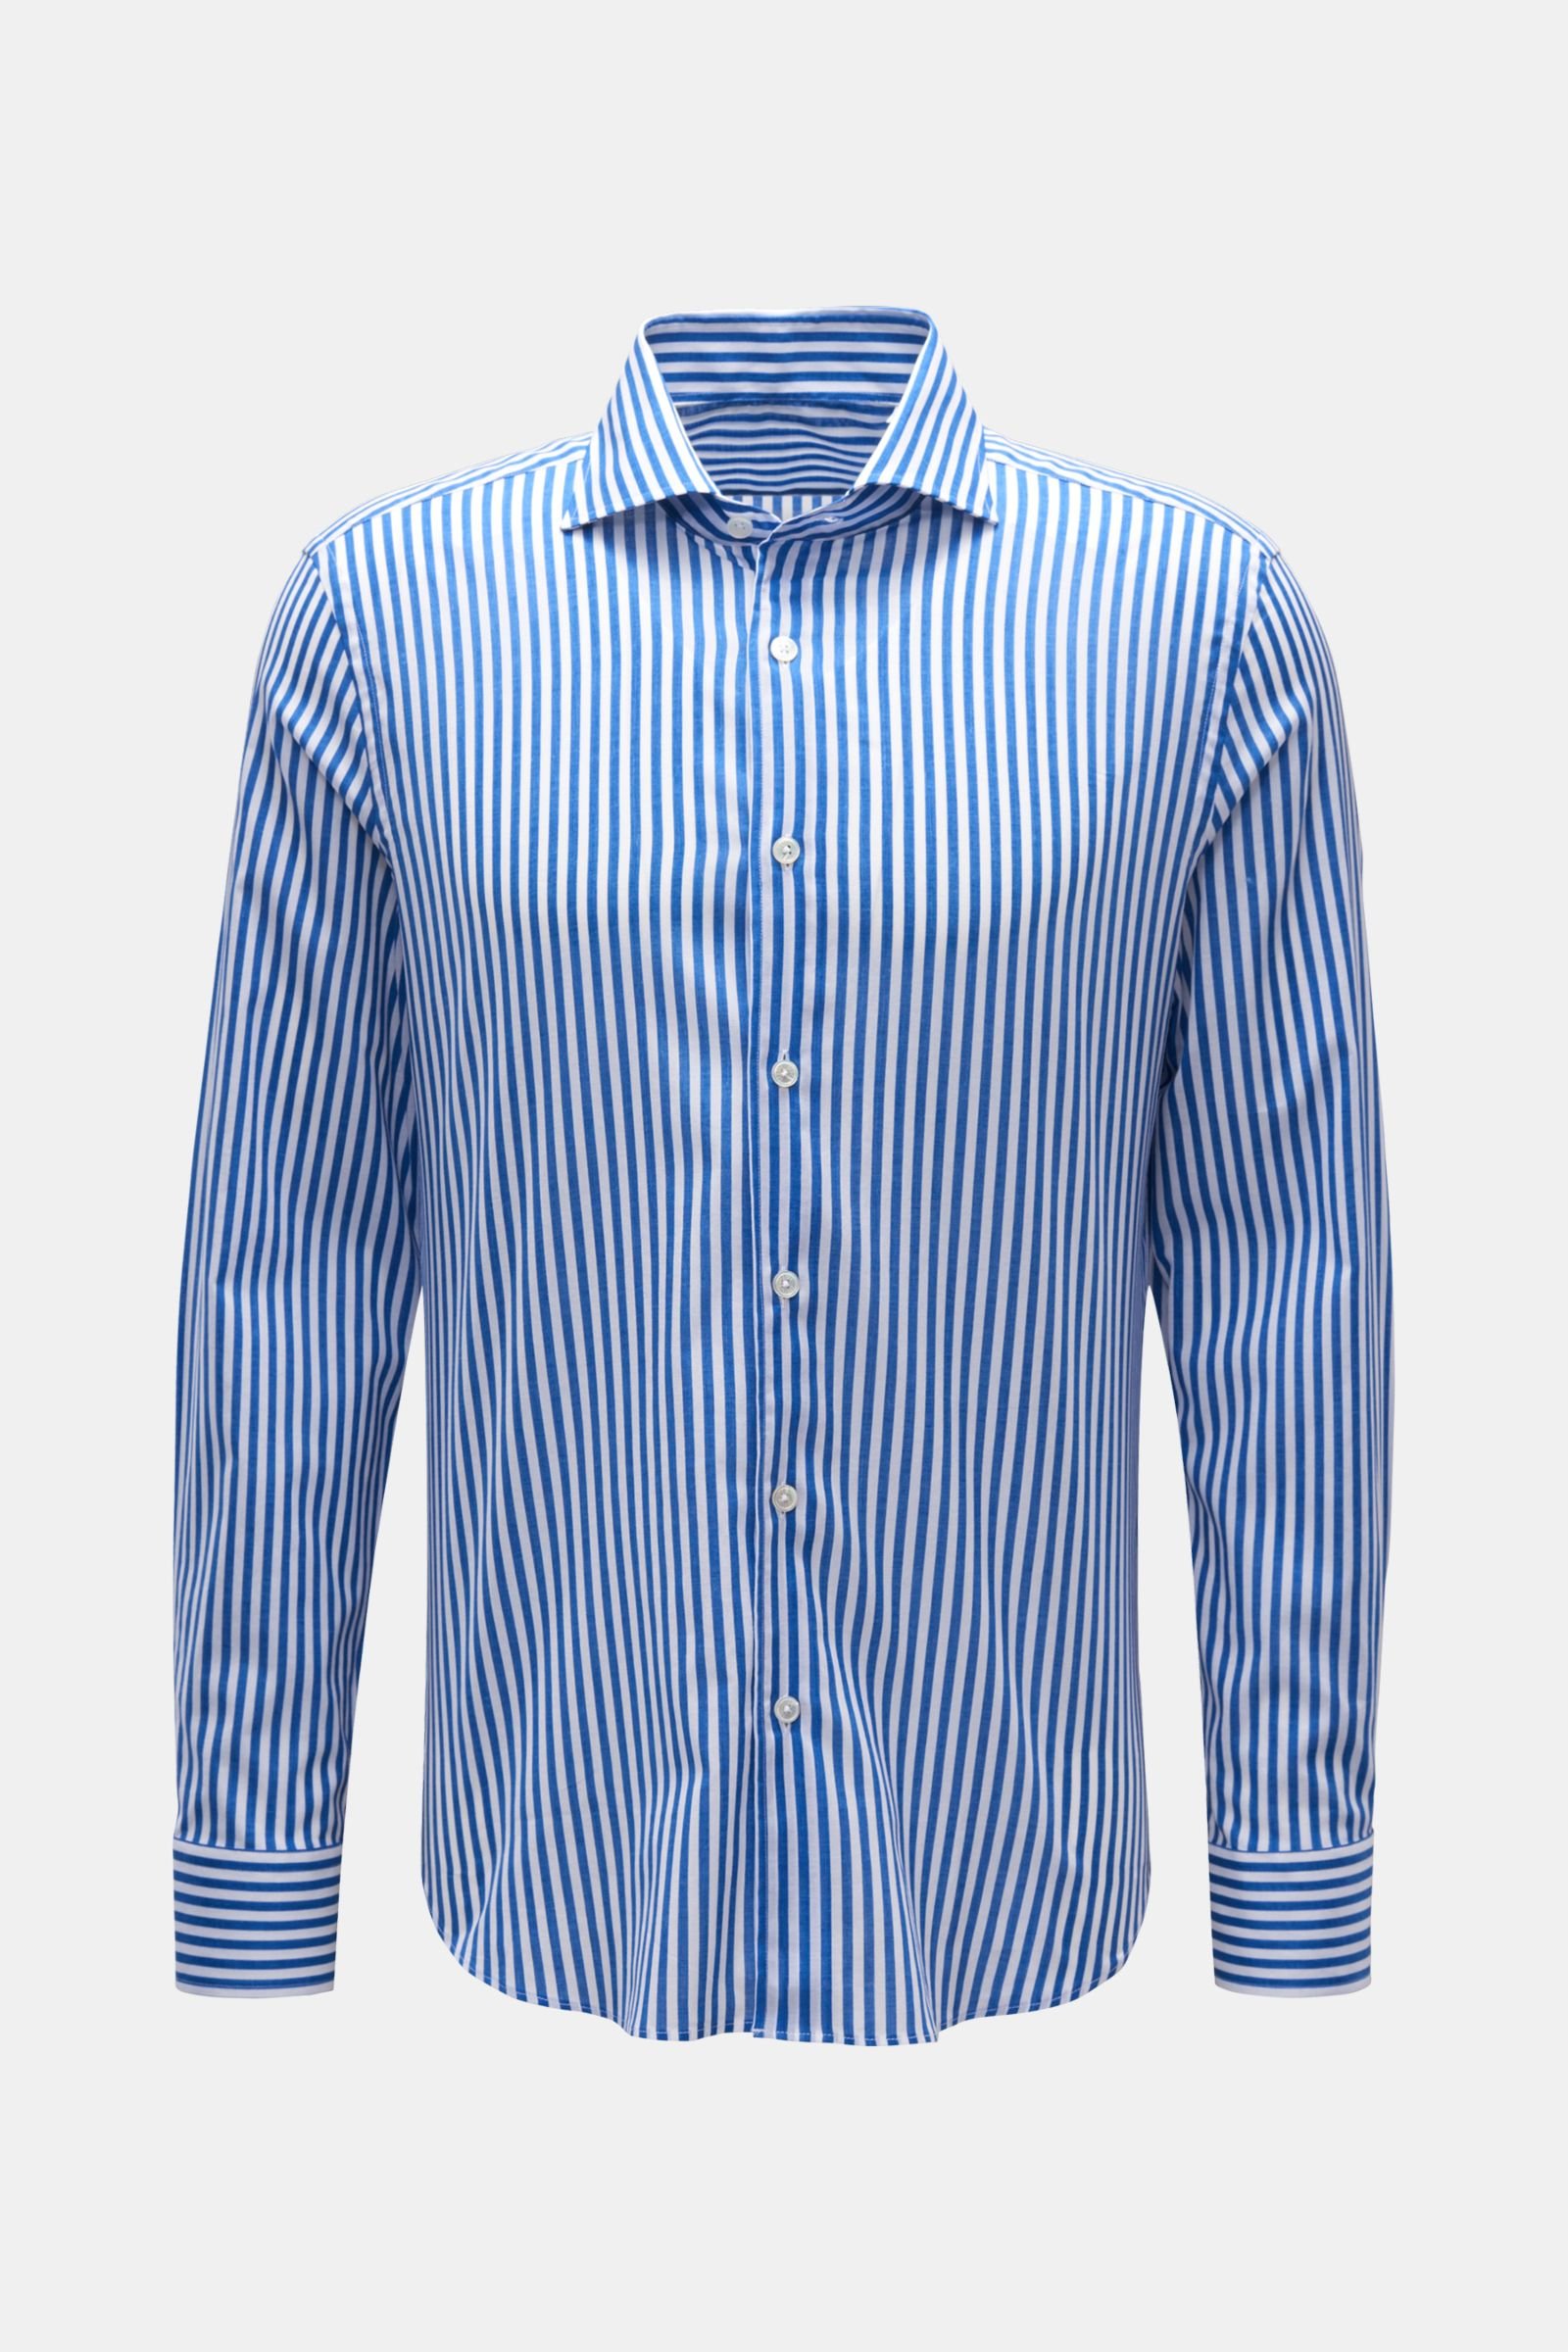 Casual shirt 'Sean' shark collar navy/white striped